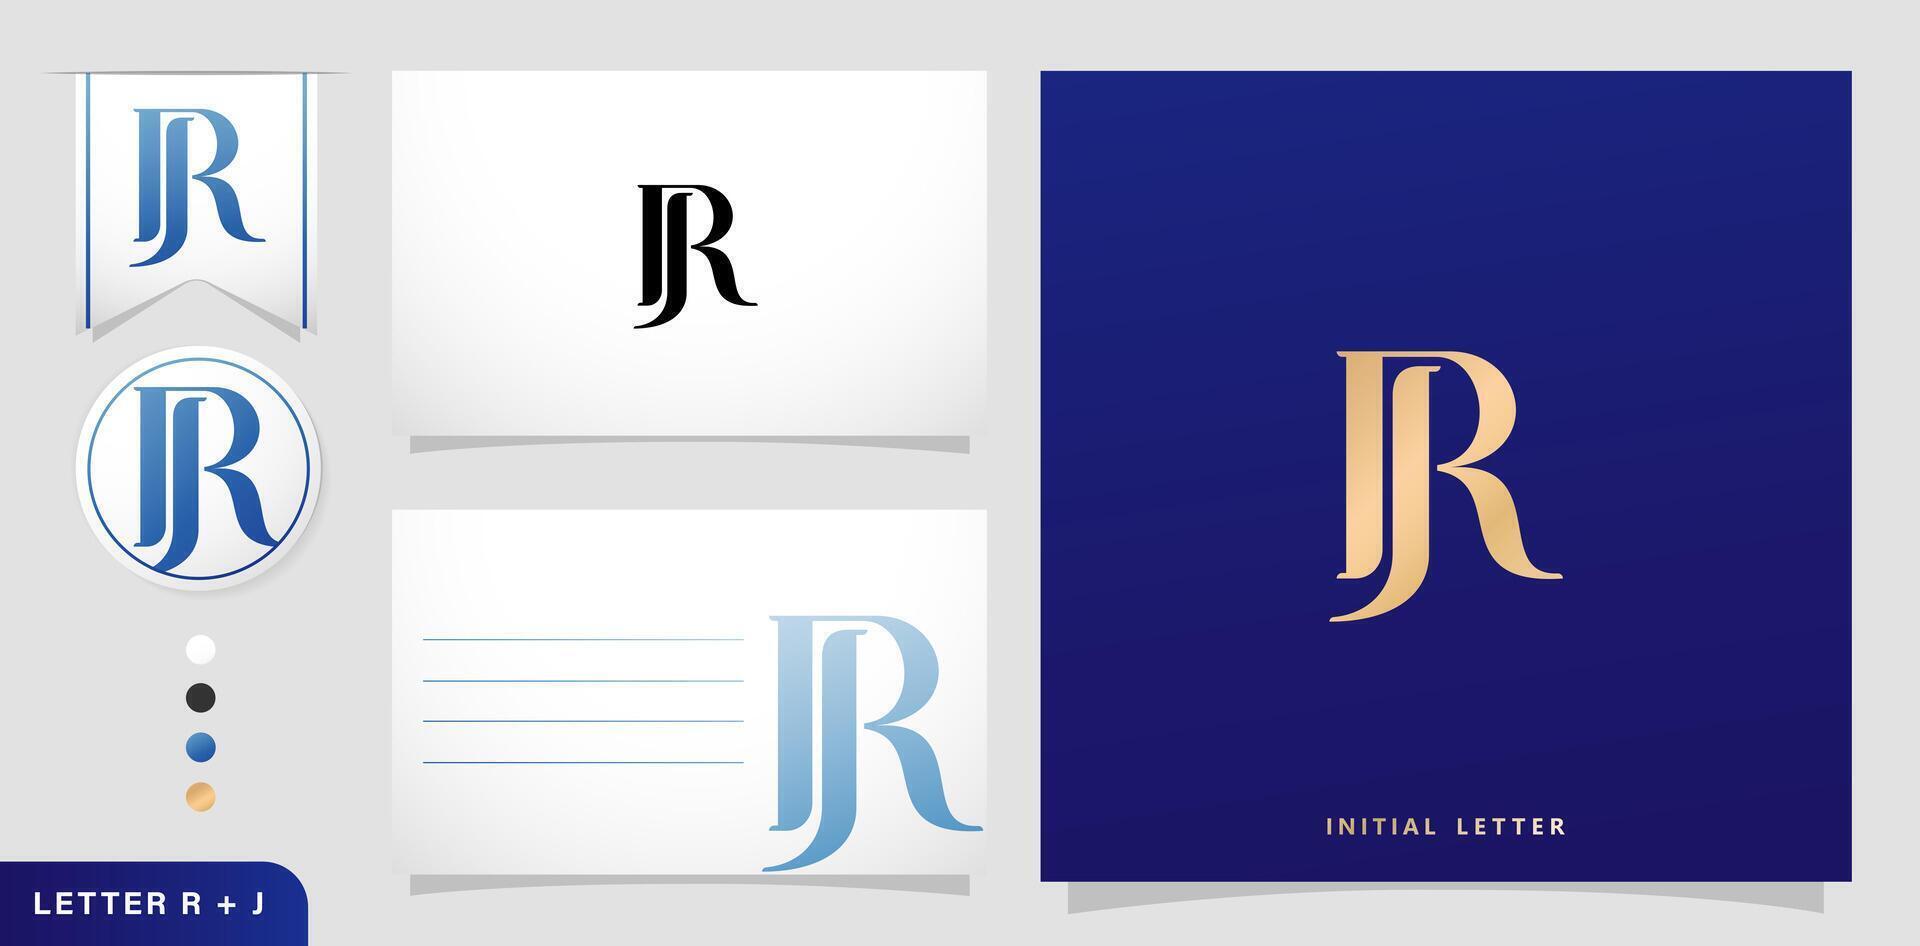 en uppsättning av företag kort med de brev rj, lyx första brev r och j logotyper mönster i blå färger för branding annonser kampanjer, boktryck, broderi, beläggning inbjudningar, kuvert tecken symboler vektor